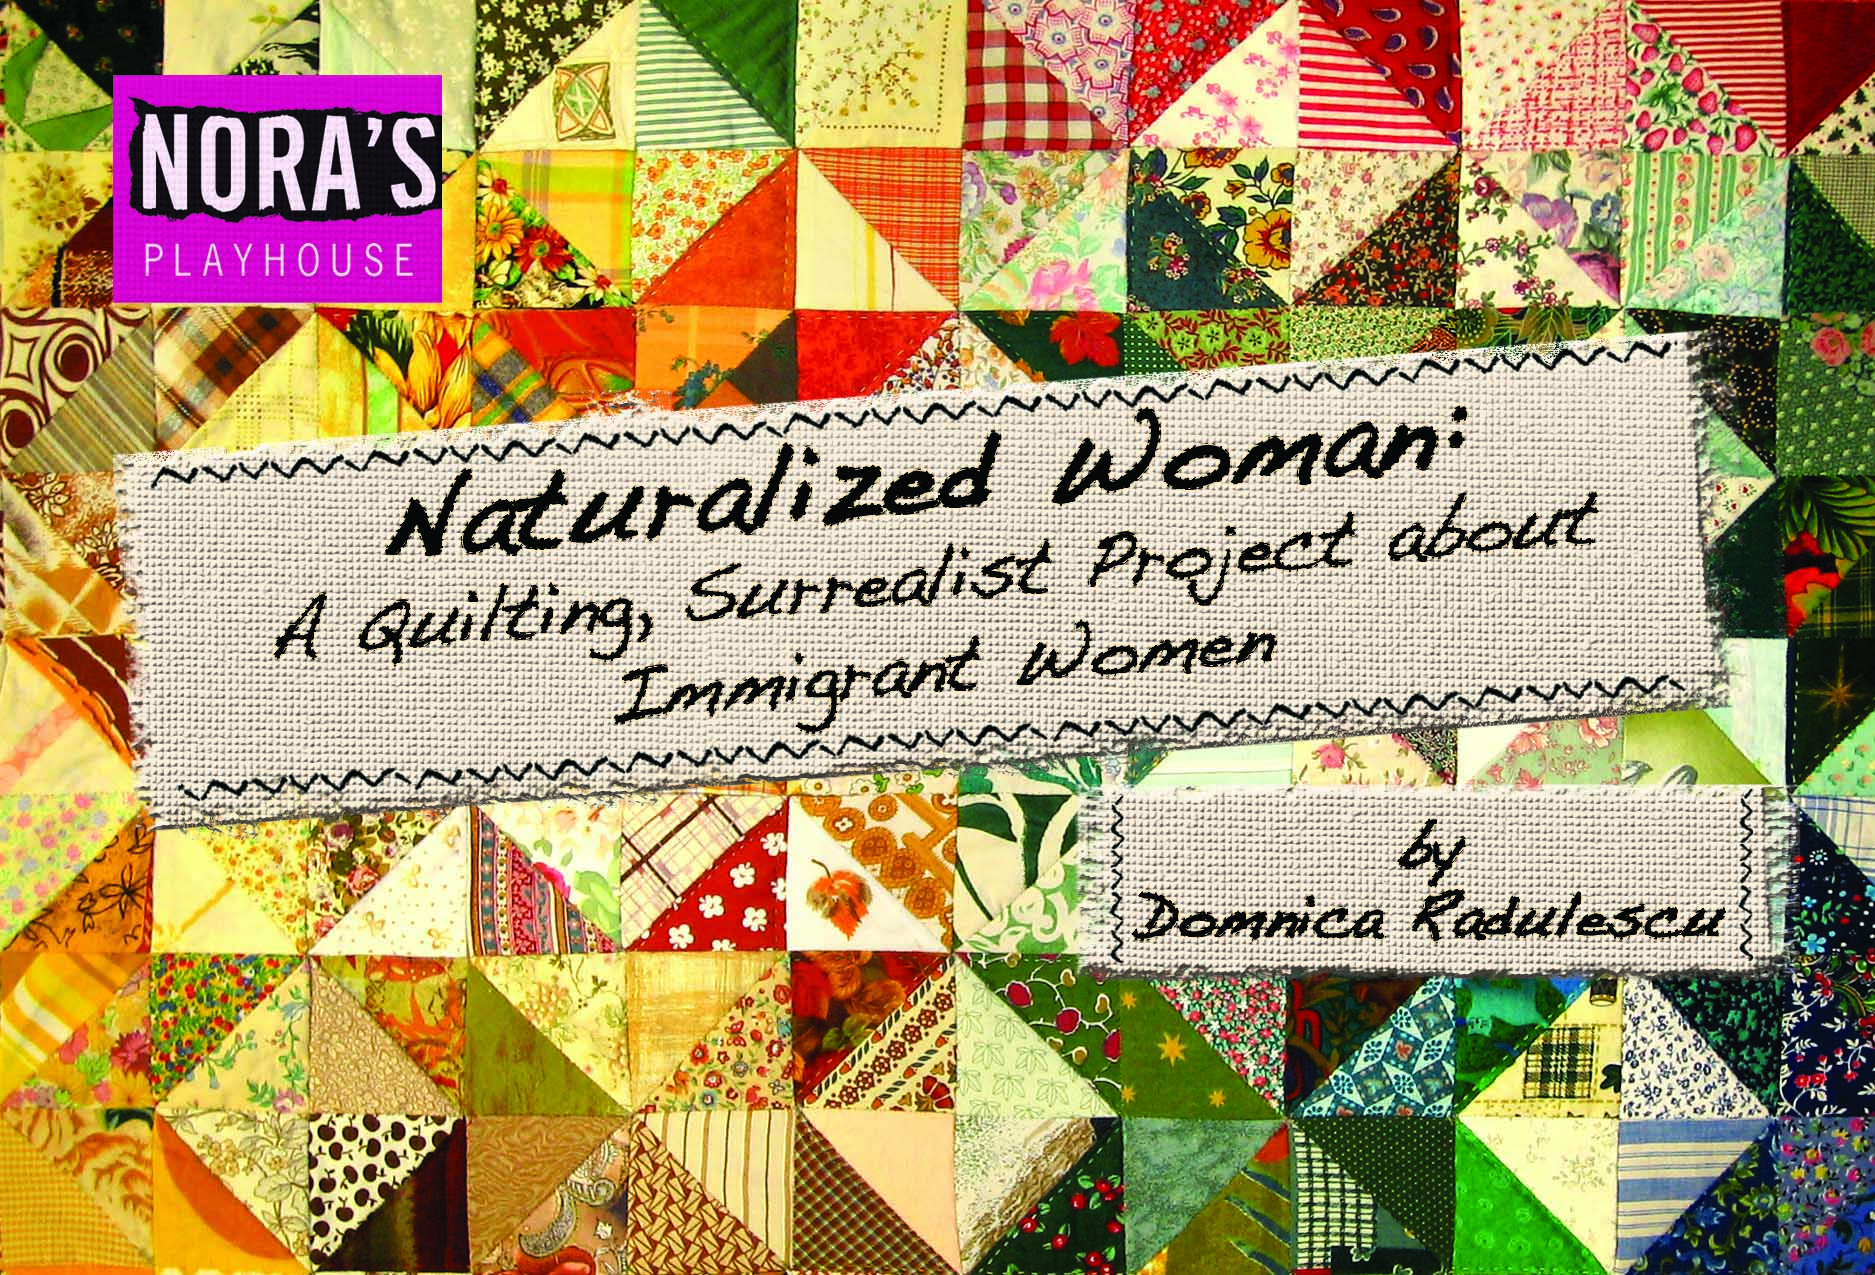 Naturalized Woman